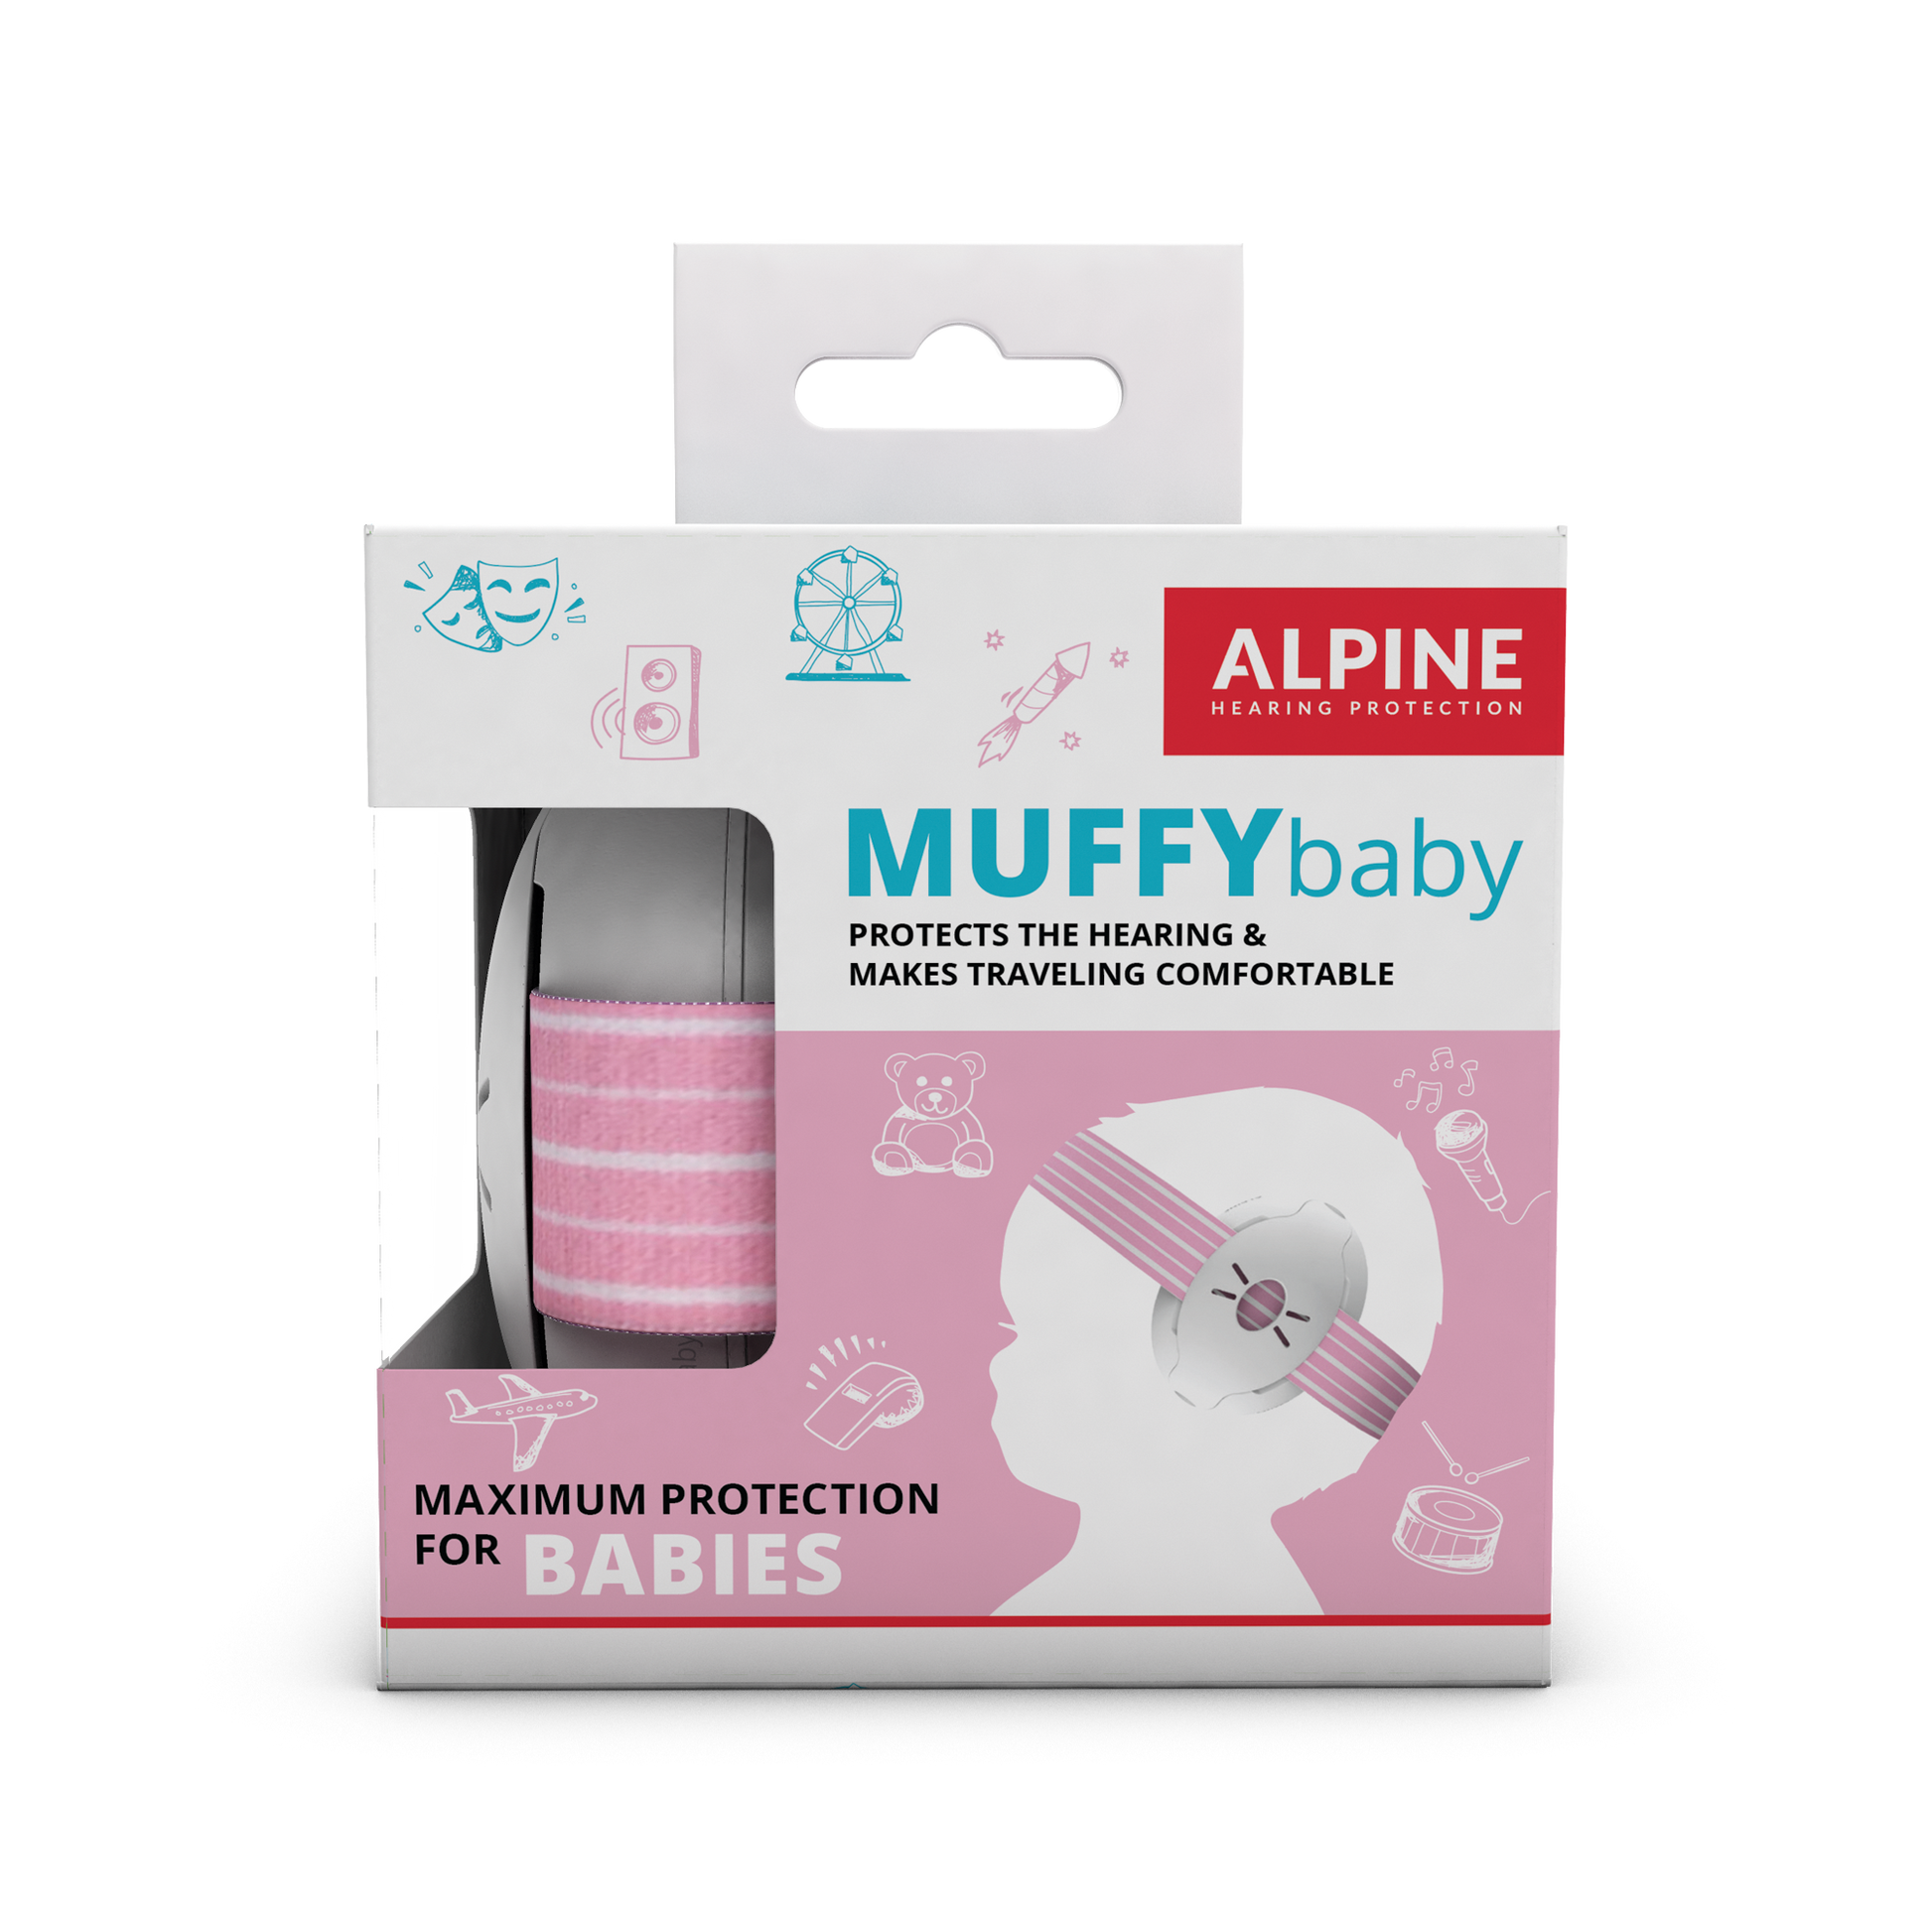 Alpine Muffy Kids - Auriculares con cancelación de ruido para niños,  certificado CE y ANSI, 25 dB, ayuda sensorial y de concentración, color  amarillo